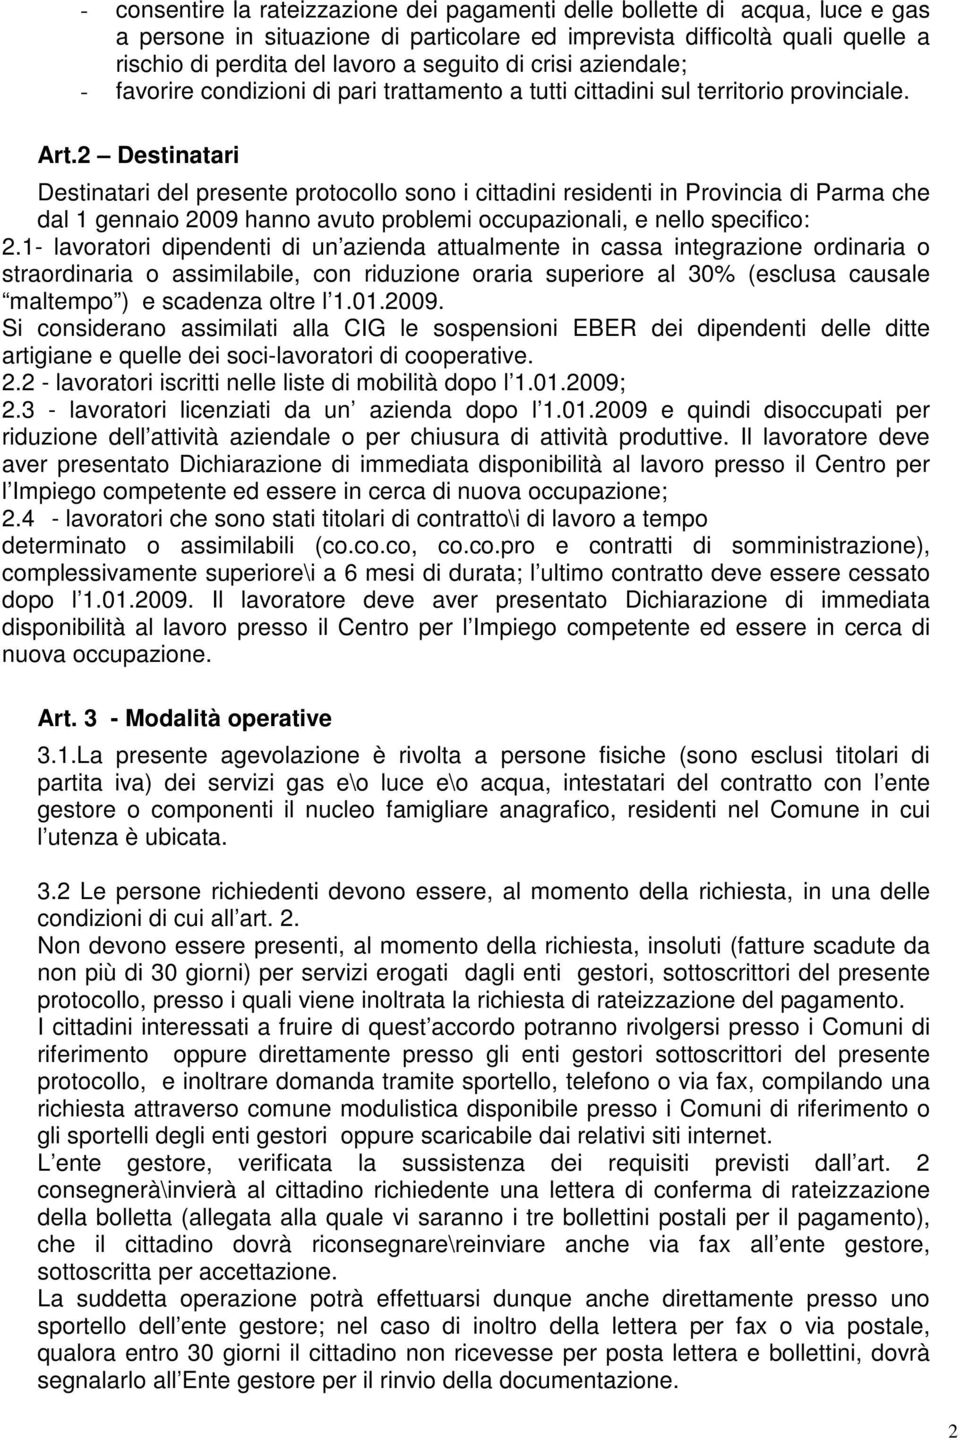 2 Destinatari Destinatari del presente protocollo sono i cittadini residenti in Provincia di Parma che dal 1 gennaio 2009 hanno avuto problemi occupazionali, e nello specifico: 2.